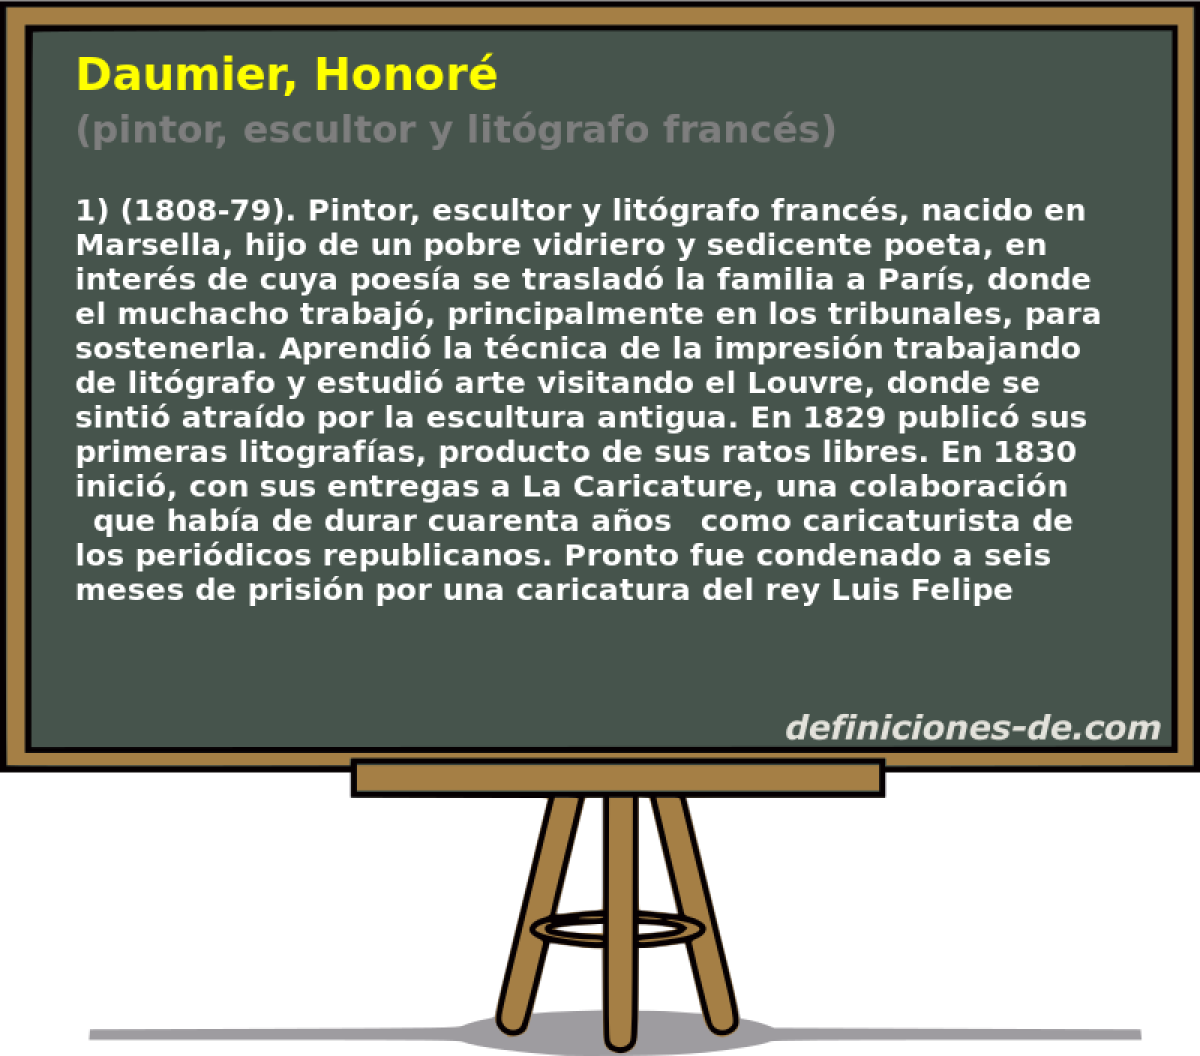 Daumier, Honor (pintor, escultor y litgrafo francs)